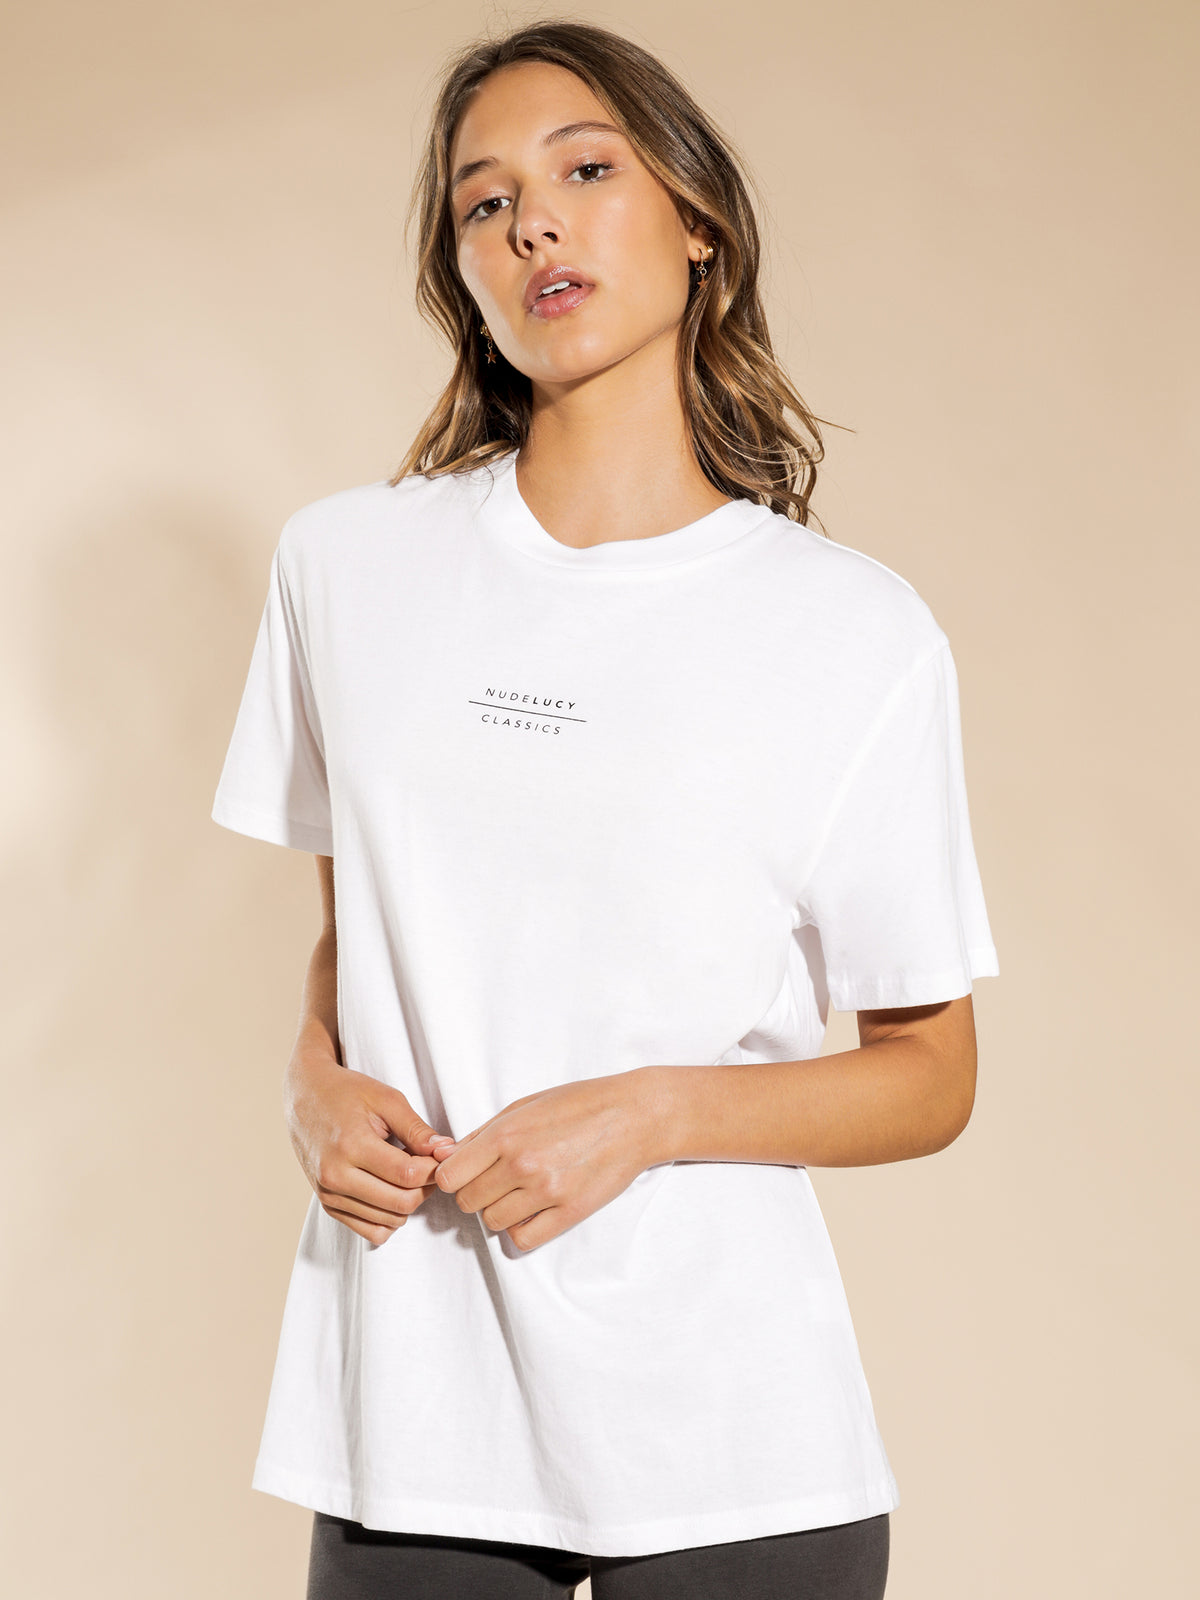 Classics Slogan Boyfriend T-Shirt in White